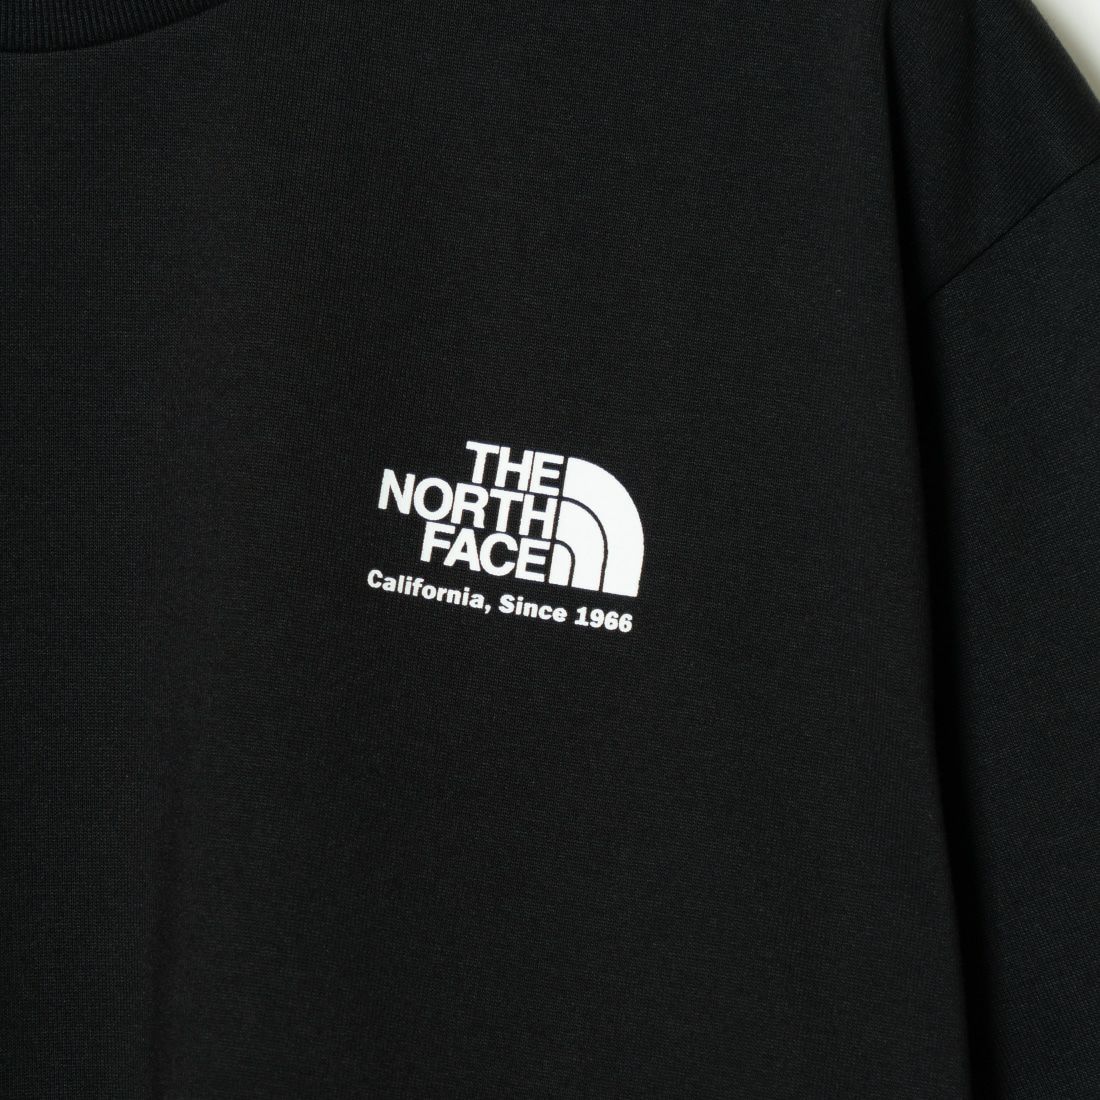 THE NORTH FACE [ザ ノースフェイス] ショートスリーブ ヒストリカルロゴTシャツ [NT32407]